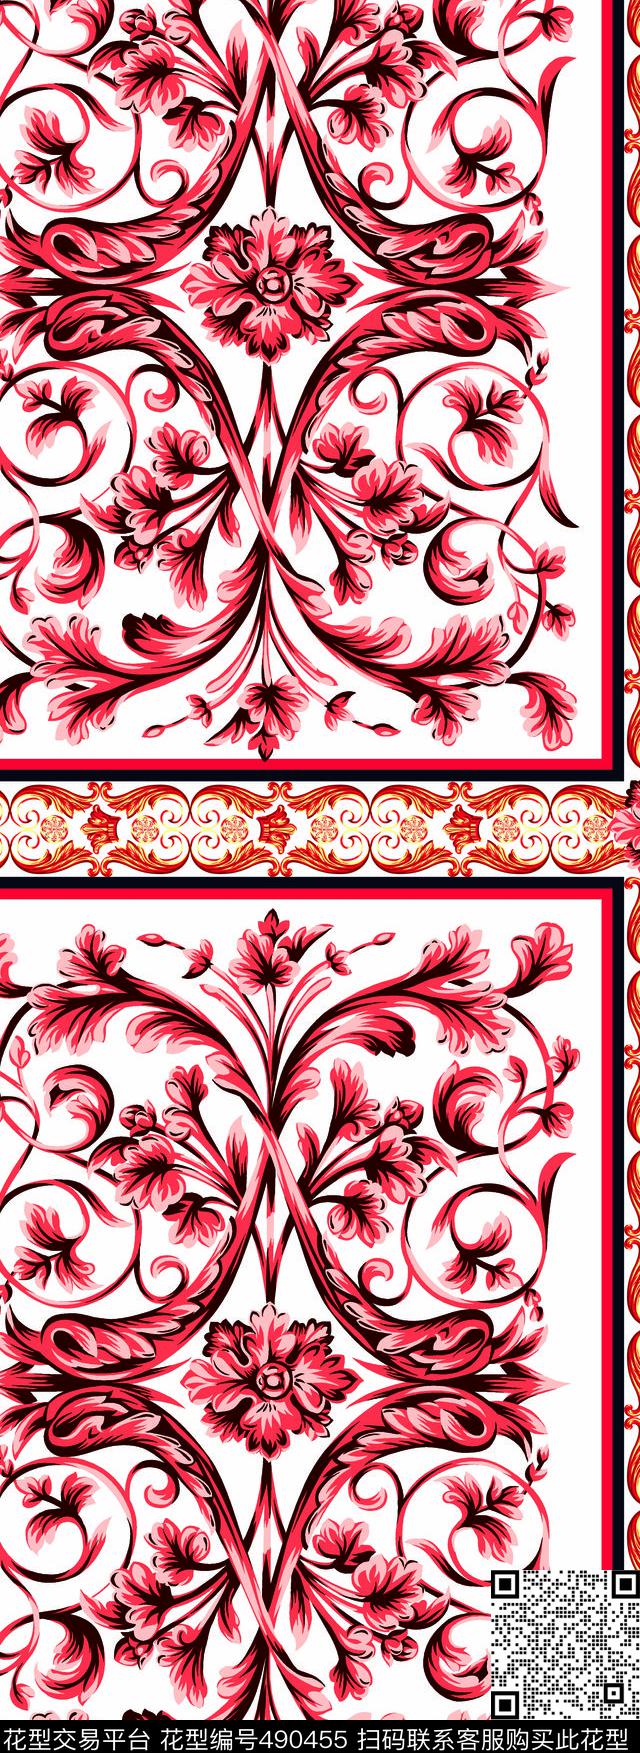 潮流大牌D&G风格时尚印花 - 490455 - 民族风 潮流时尚 传统民族风花纹 - 数码印花花型 － 其他花型设计 － 瓦栏